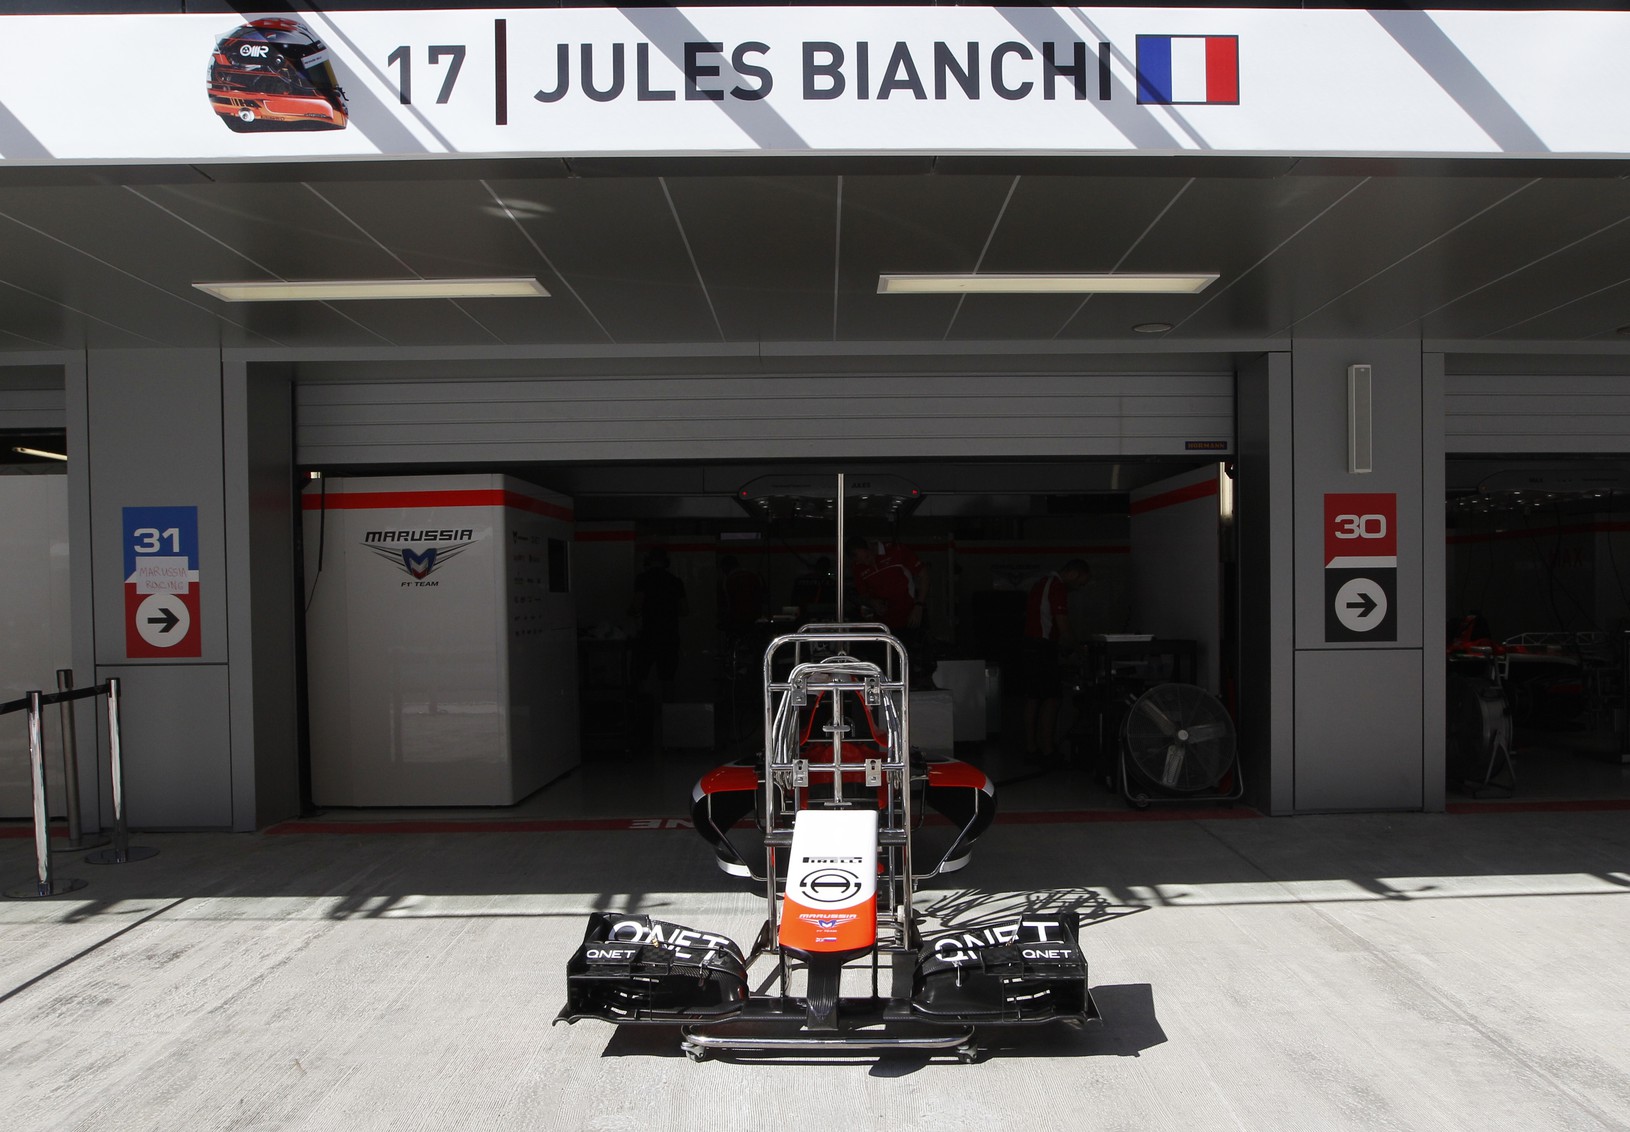 Jules Bianchi